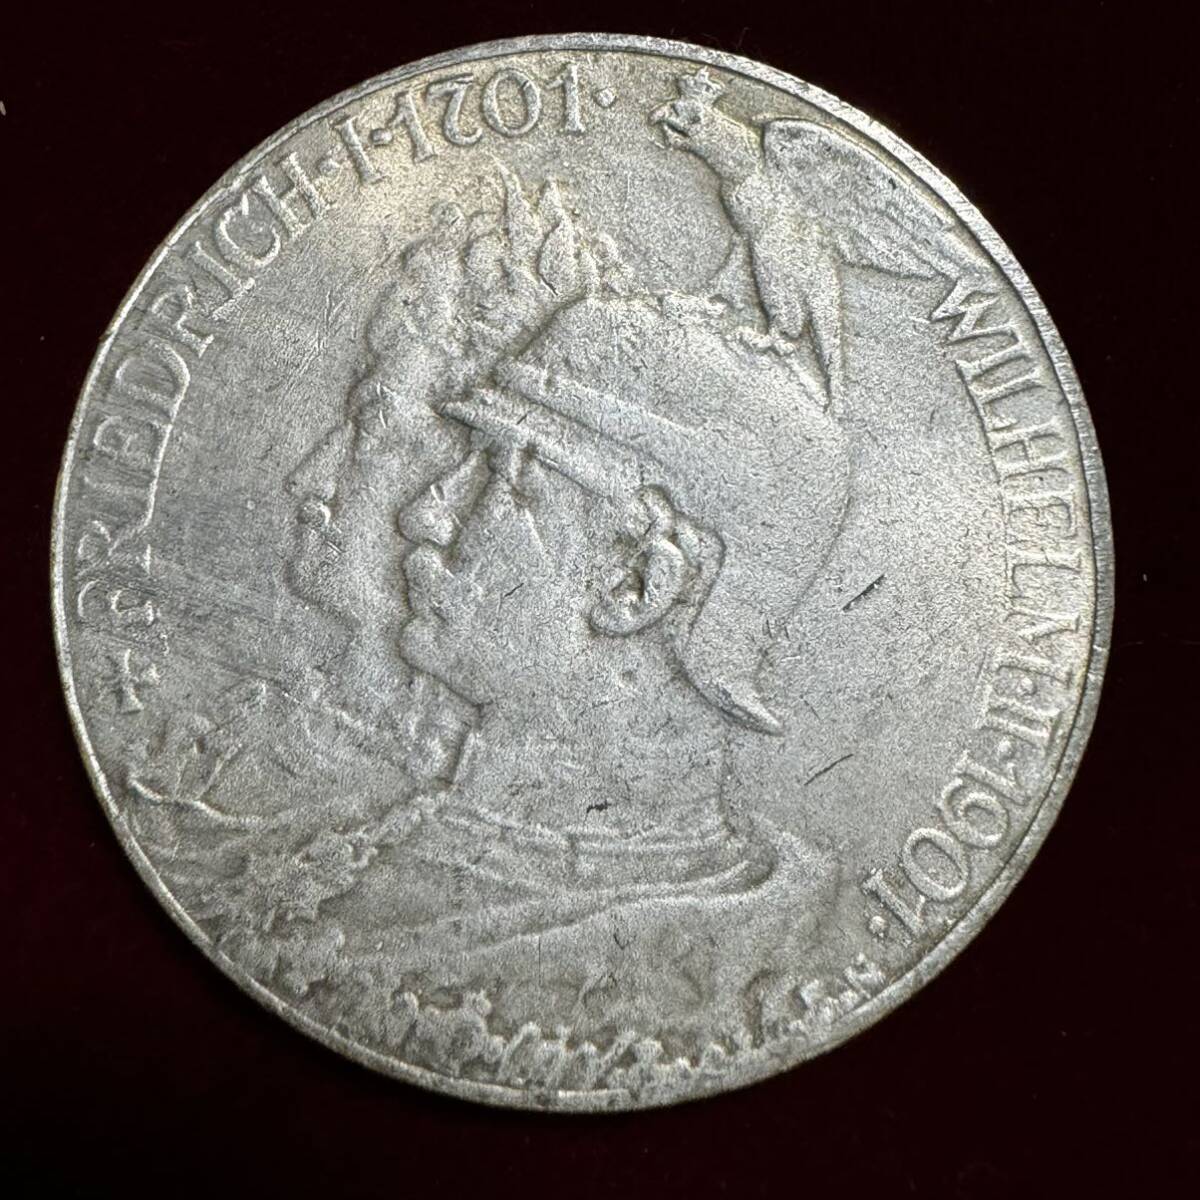 ドイツ 硬貨 古銭 プロイセン王国 1901年 フリードリヒ1世 ウィリアム2世 プロイセン王国建国200周年 カンムリワシ 記念幣 コイン 銀貨 の画像2